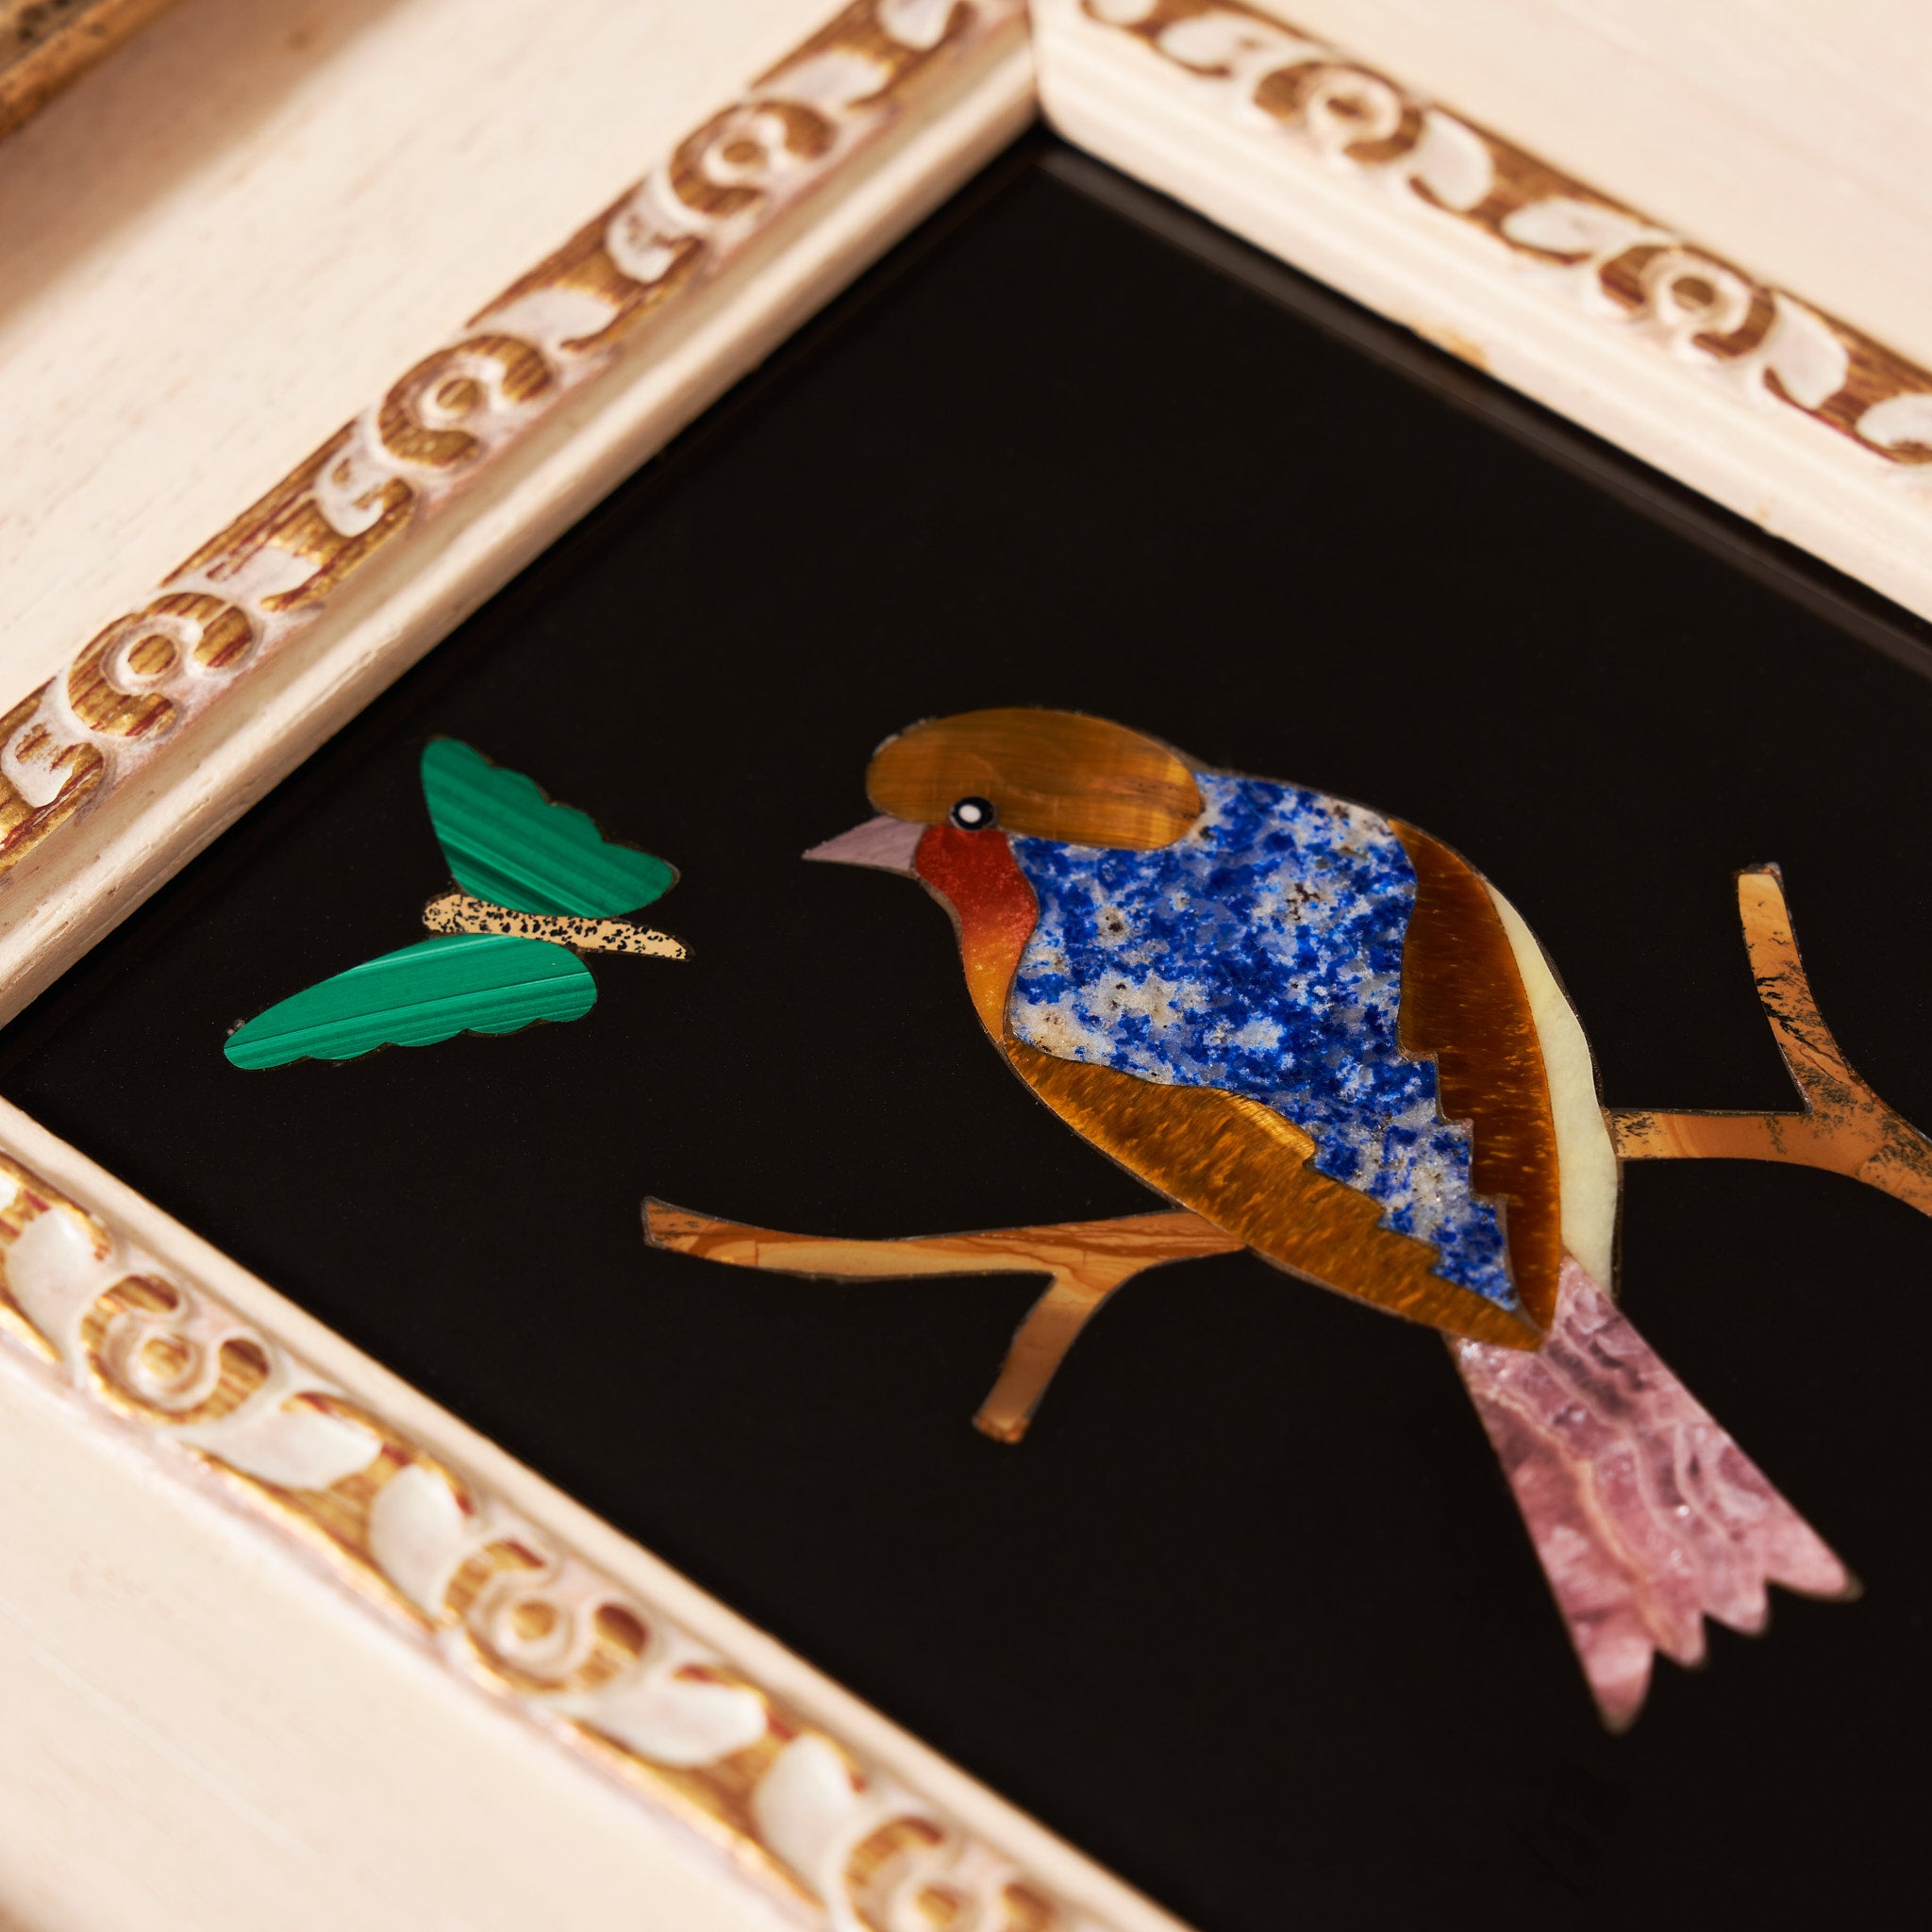 traversari-artisan-mosaic-little-bird-and-butterfly